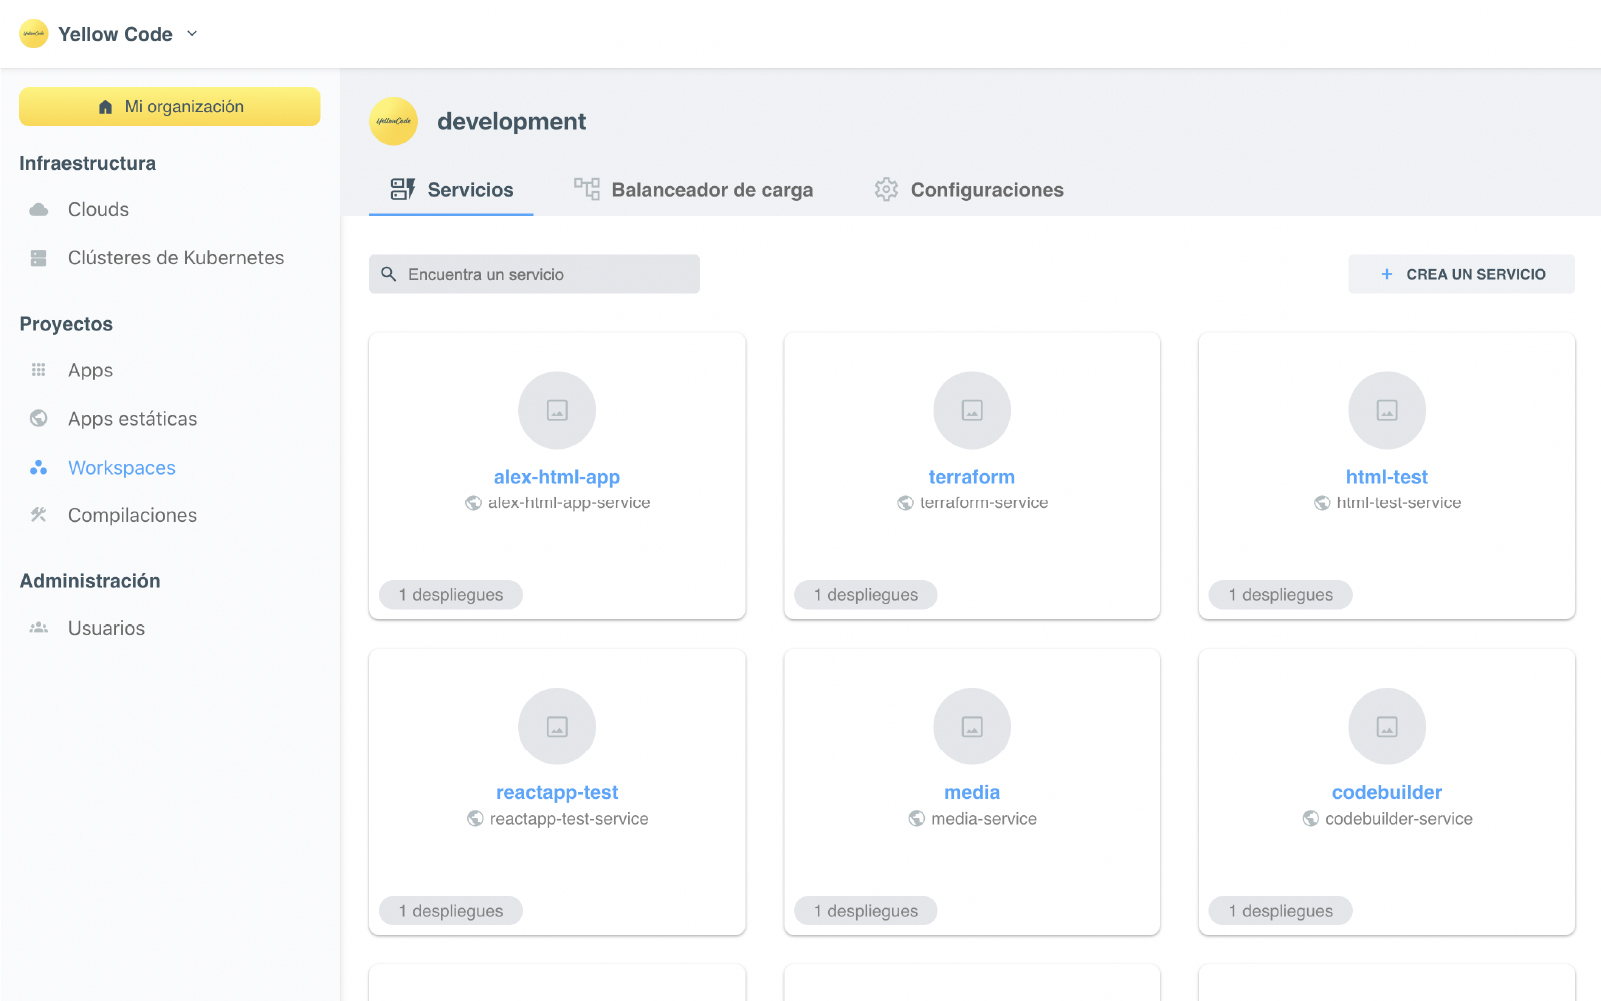 Compila tus aplicaciones en automático con Serpa Cloud